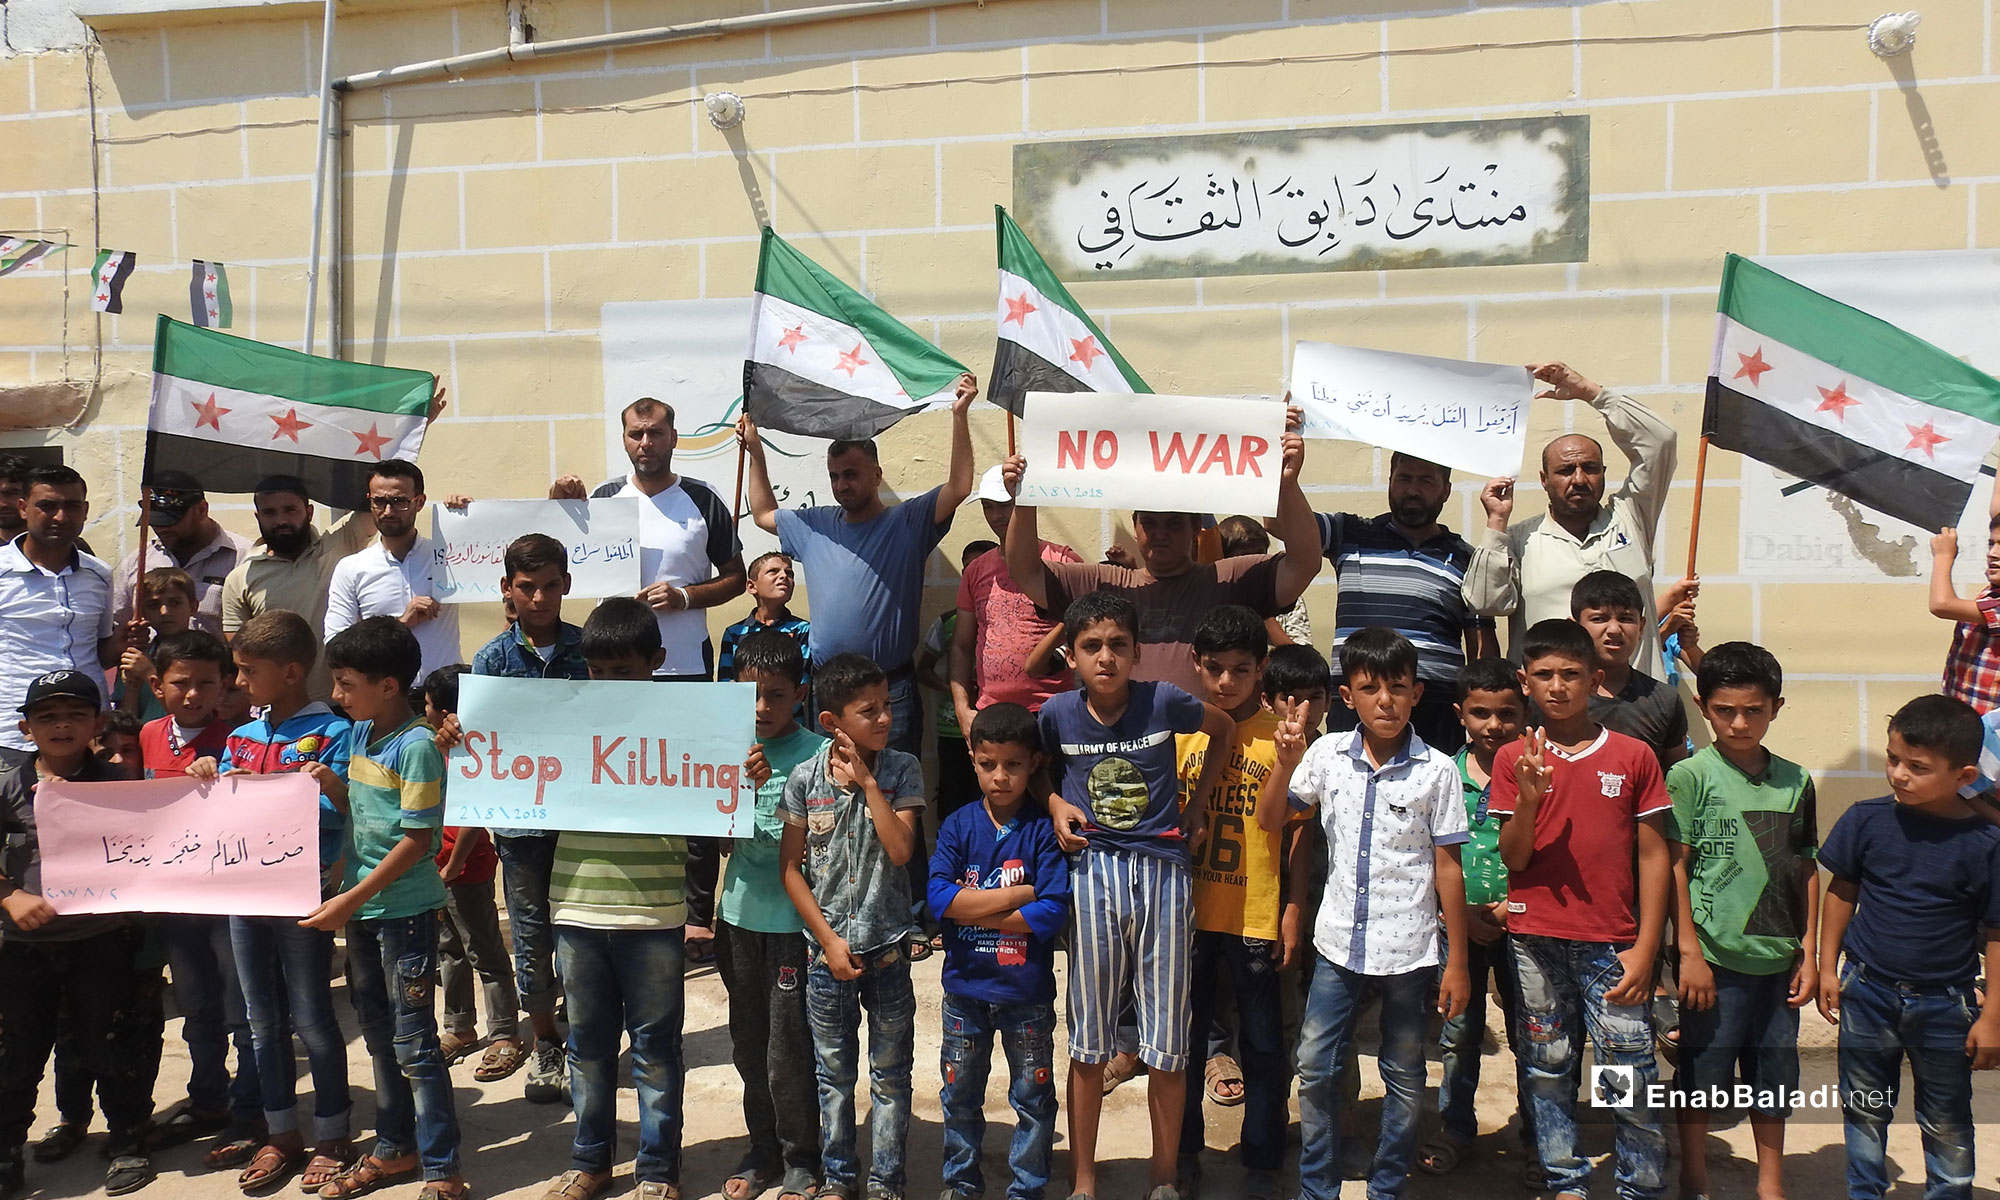 وقفة احتجاجية في بلدة دابق ضد الانتهاكات التي ترتكب بحق المعتقلين في ريف حلب الشمالي - 2 من آب 2018 (عنب بلدي)